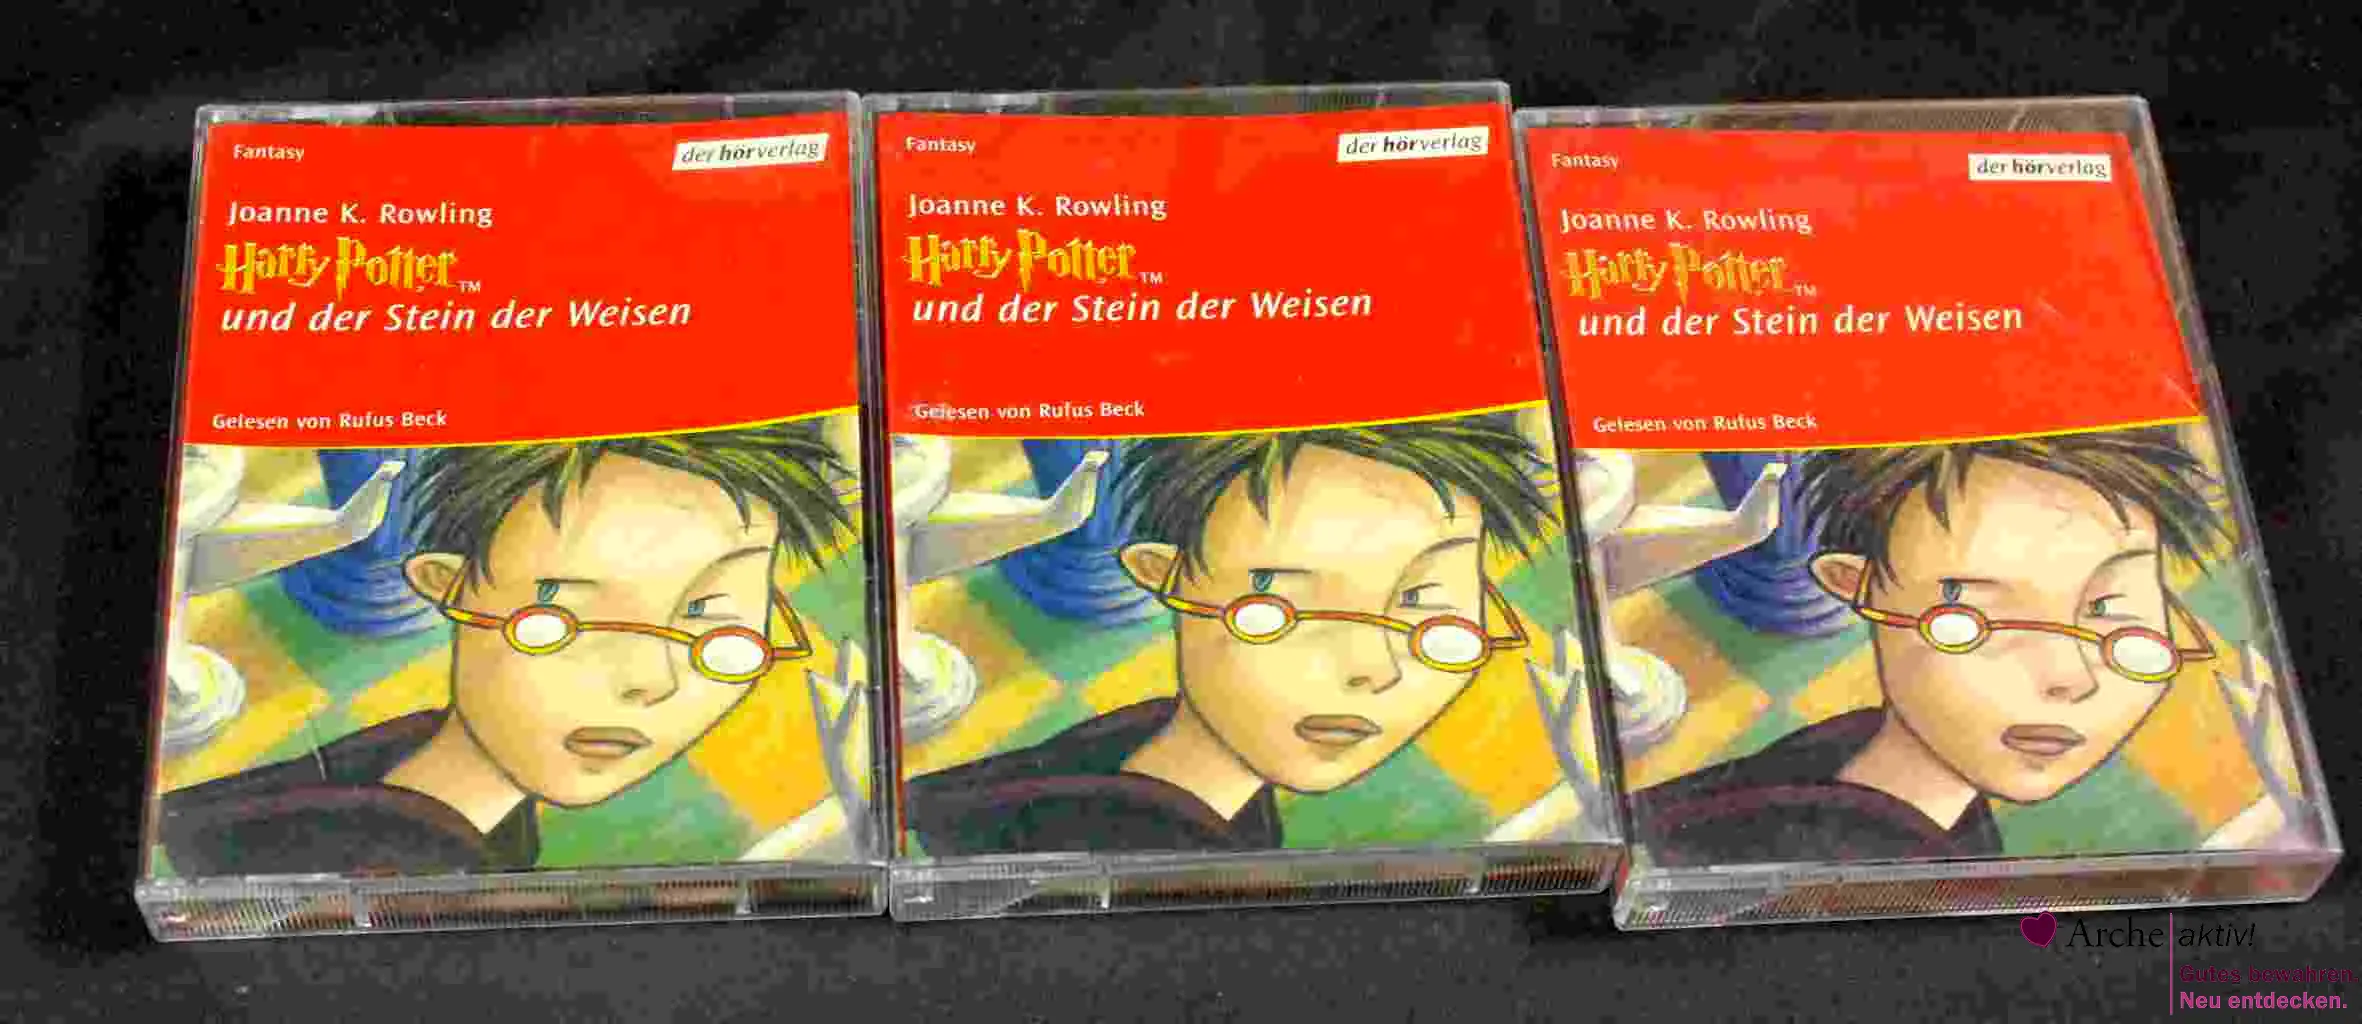 Harry Potter und der Stein der Weisen - auf 6 Audiocassetten - Top Zustand 